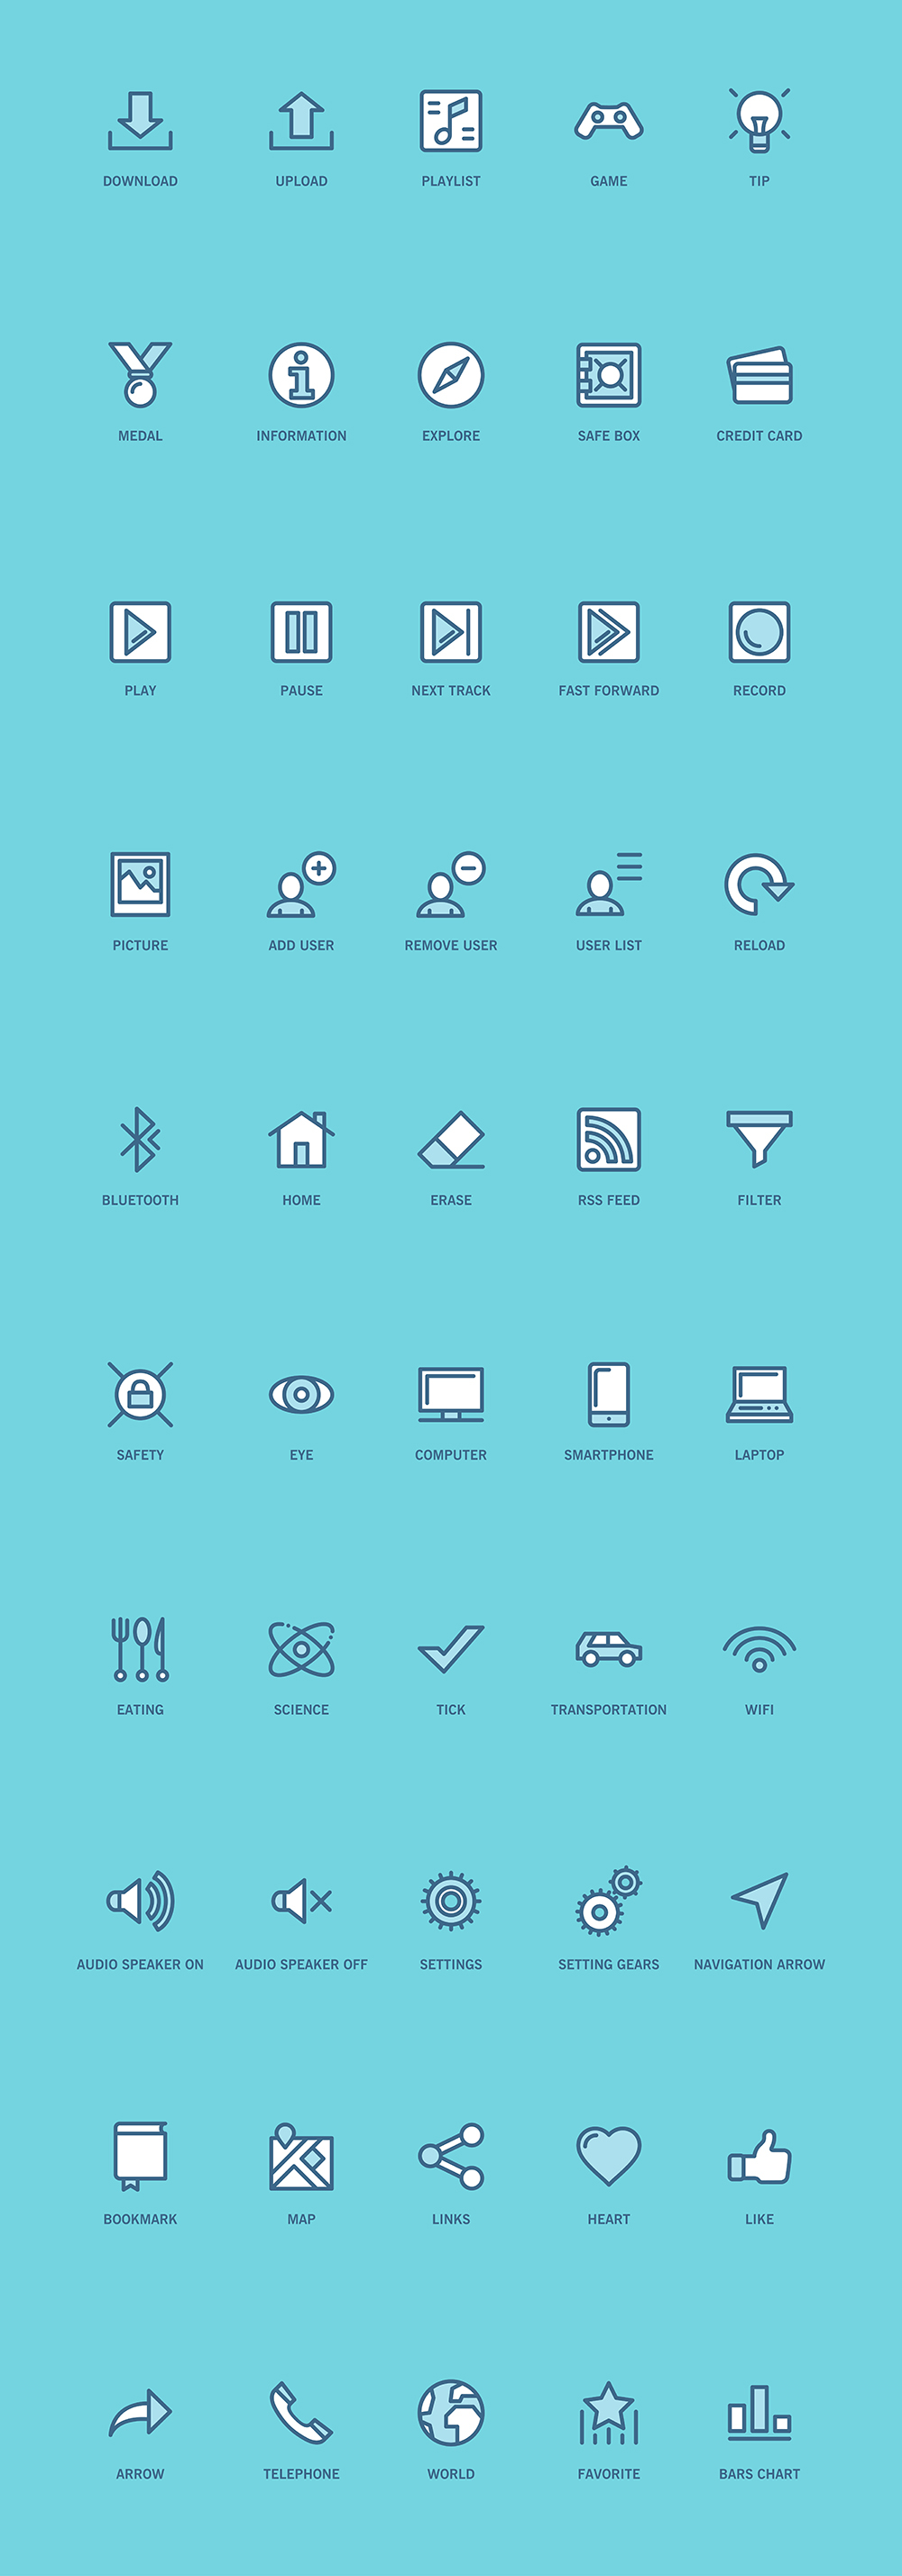 Adobe Portfolio free Icon download icon set line icon flat icon freebie UI Web user interface app